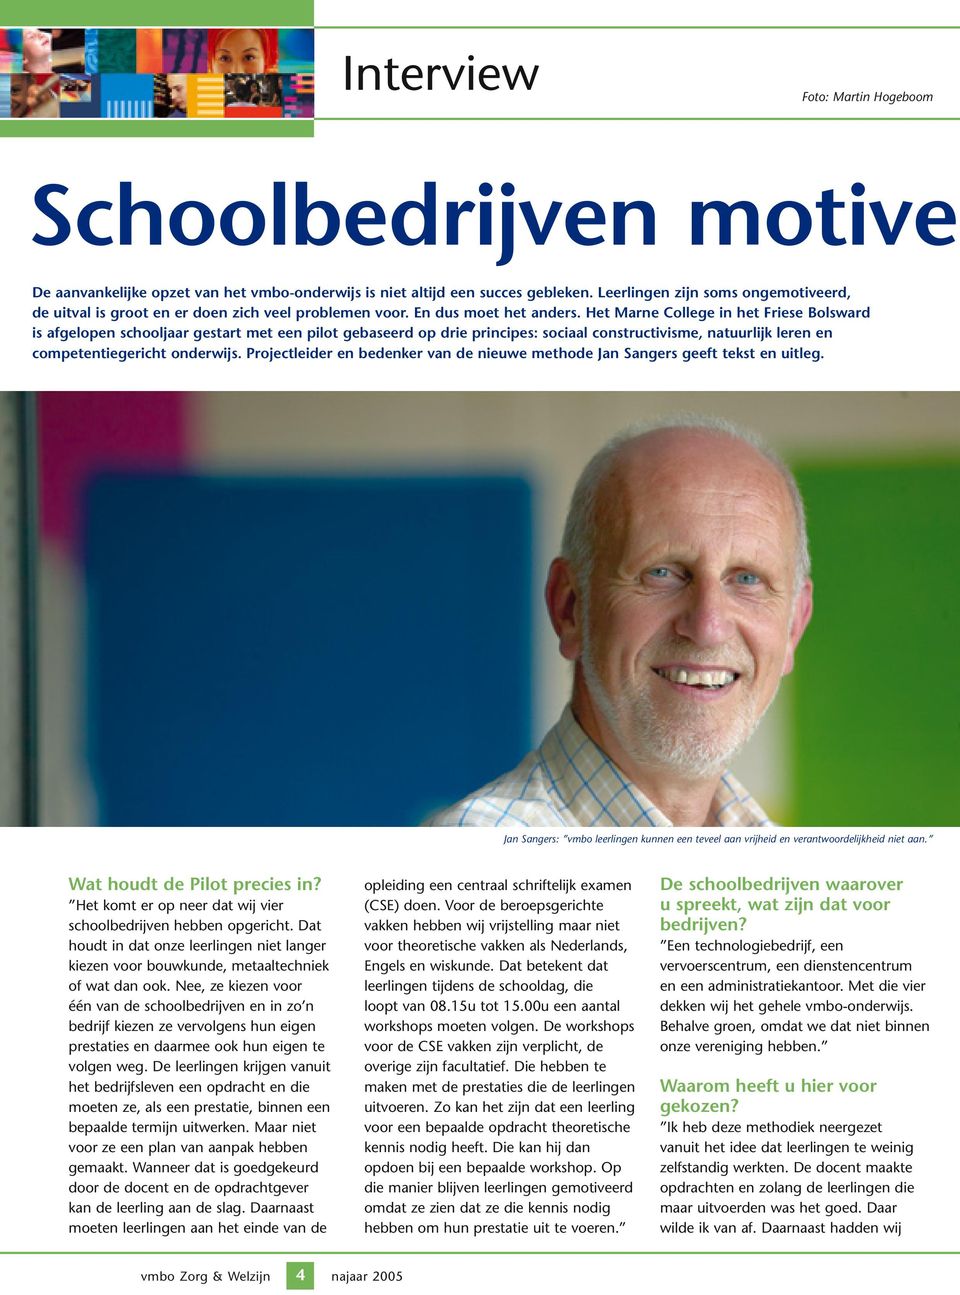 Het Marne College in het Friese Bolsward is afgelopen schooljaar gestart met een pilot gebaseerd op drie principes: sociaal constructivisme, natuurlijk leren en competentiegericht onderwijs.